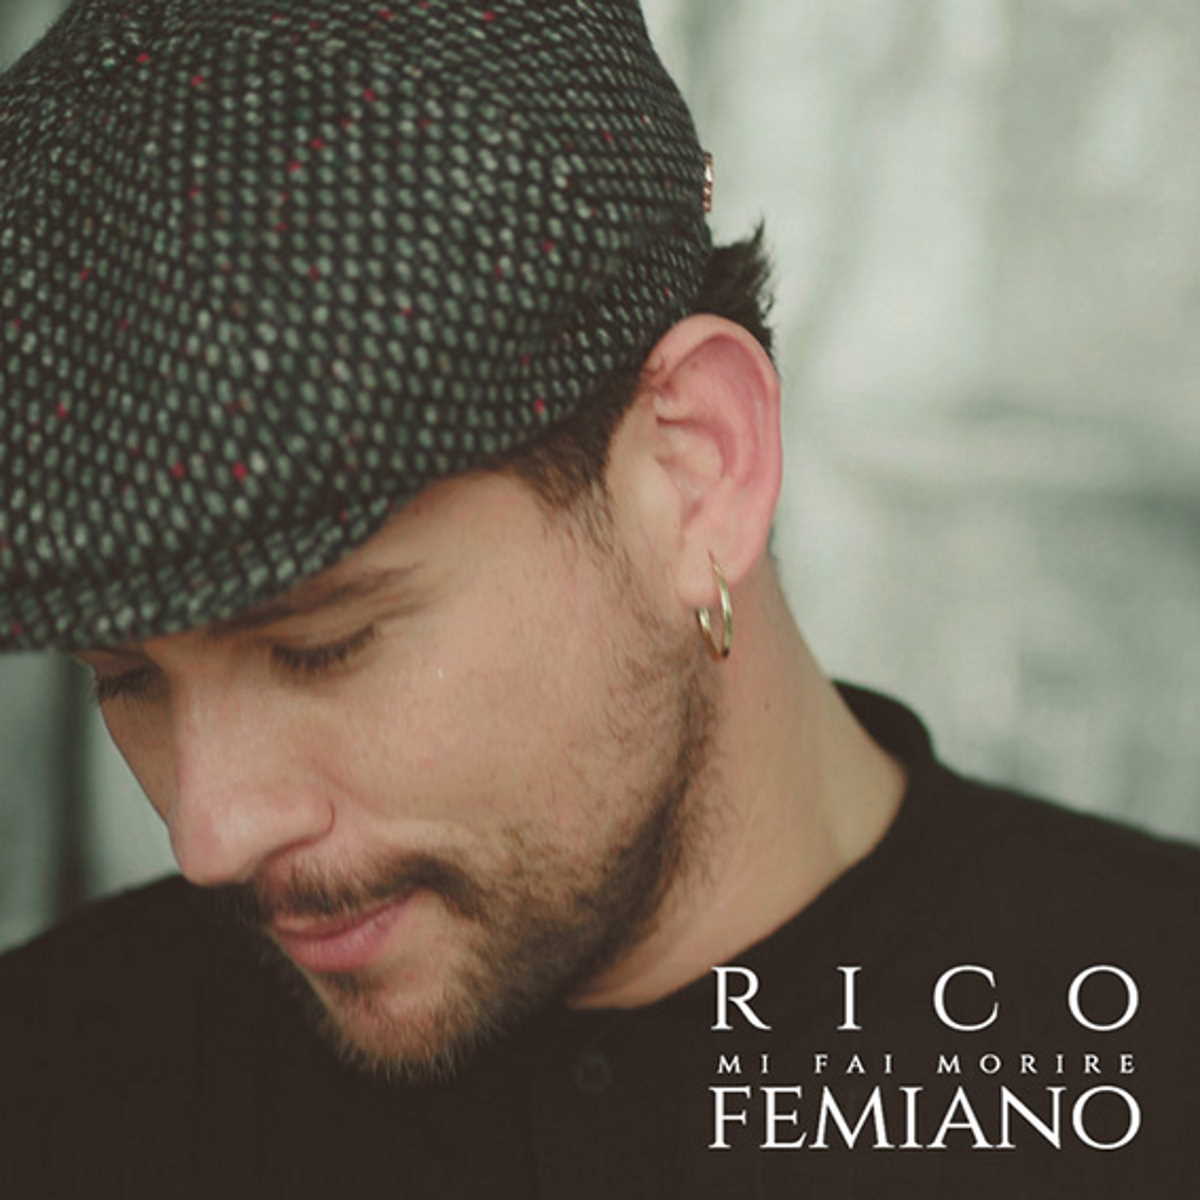 È in radio il singolo inedito di Rico Femiano Mi fai morire (L'n'R' Production/Universal), già disponibile in digitale